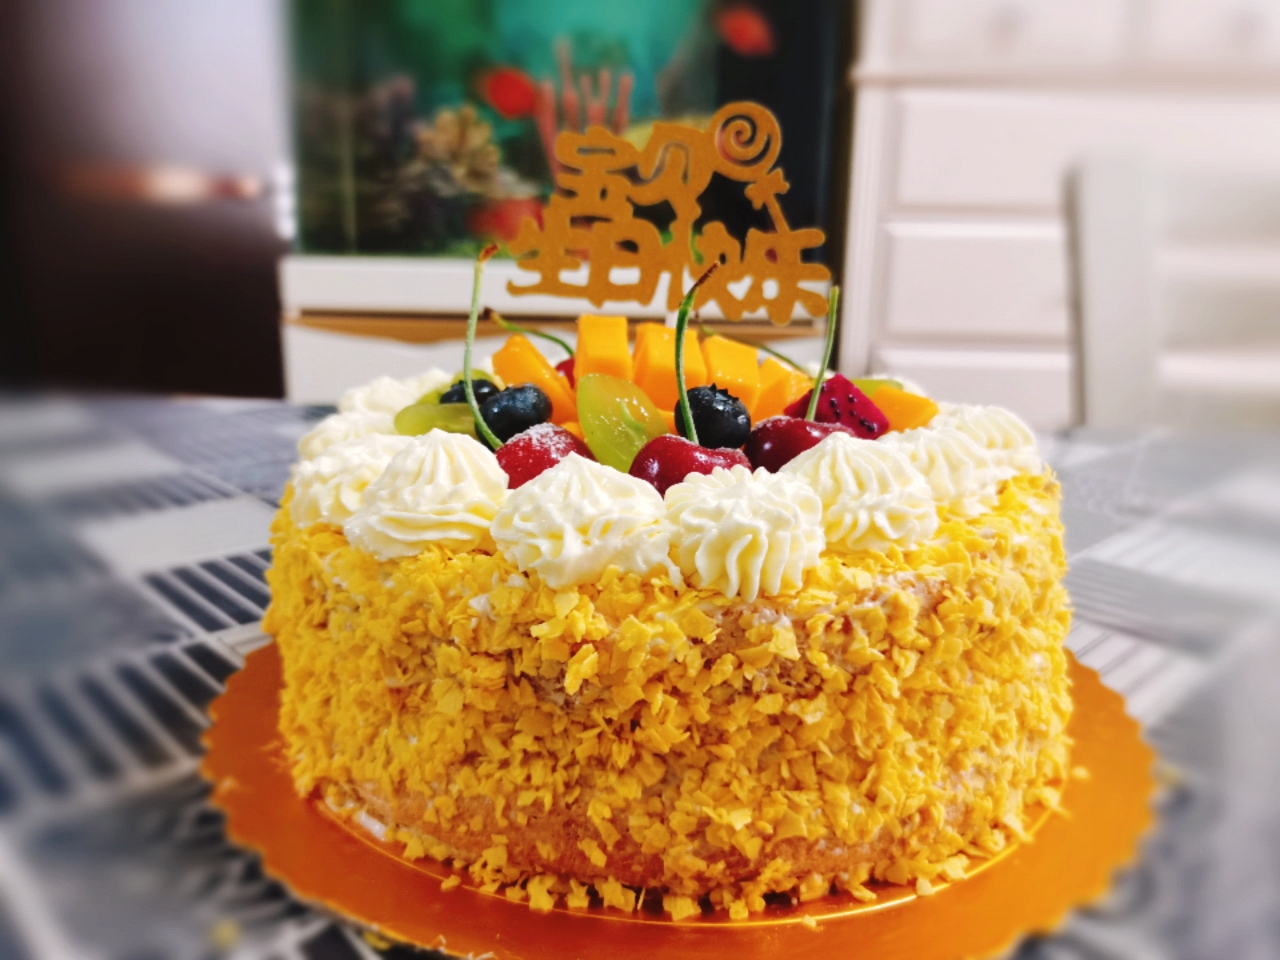 超简单的生日蛋糕裱花装饰